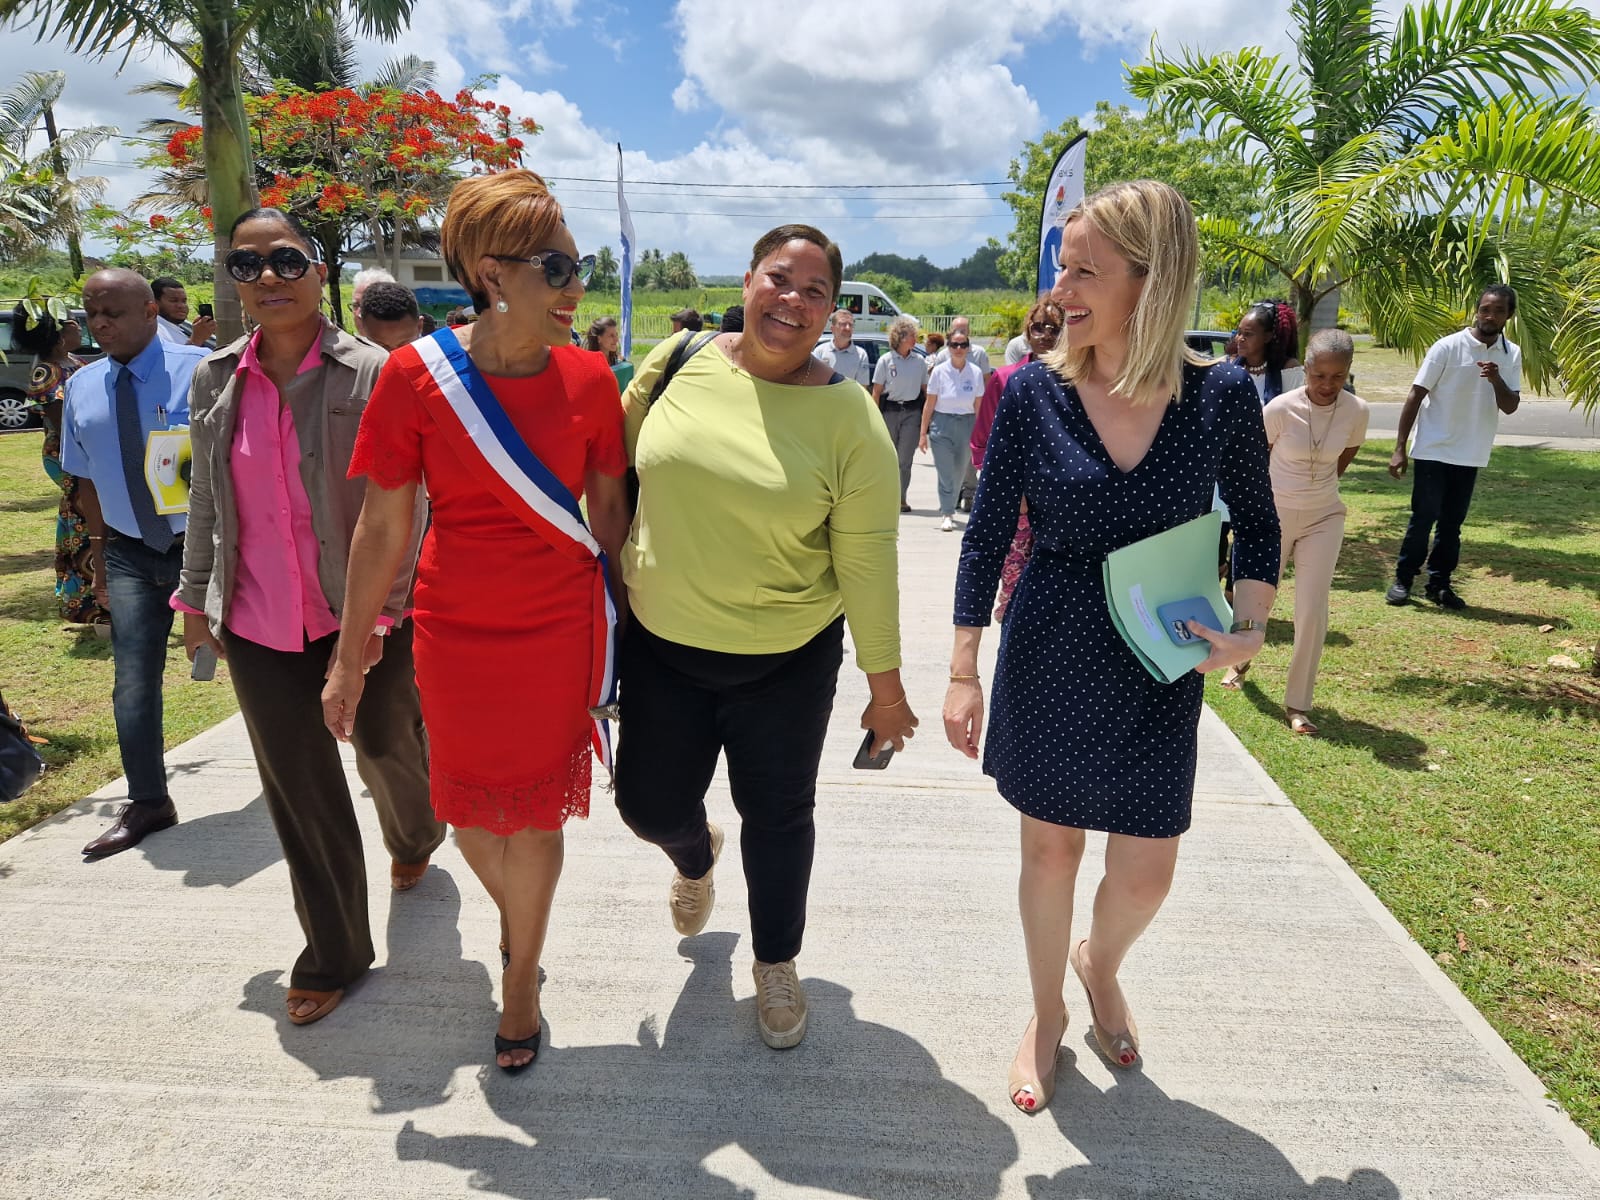     La secrétaire d’Etat à l’écologie, Bérangère Couillard en visite en Guadeloupe

